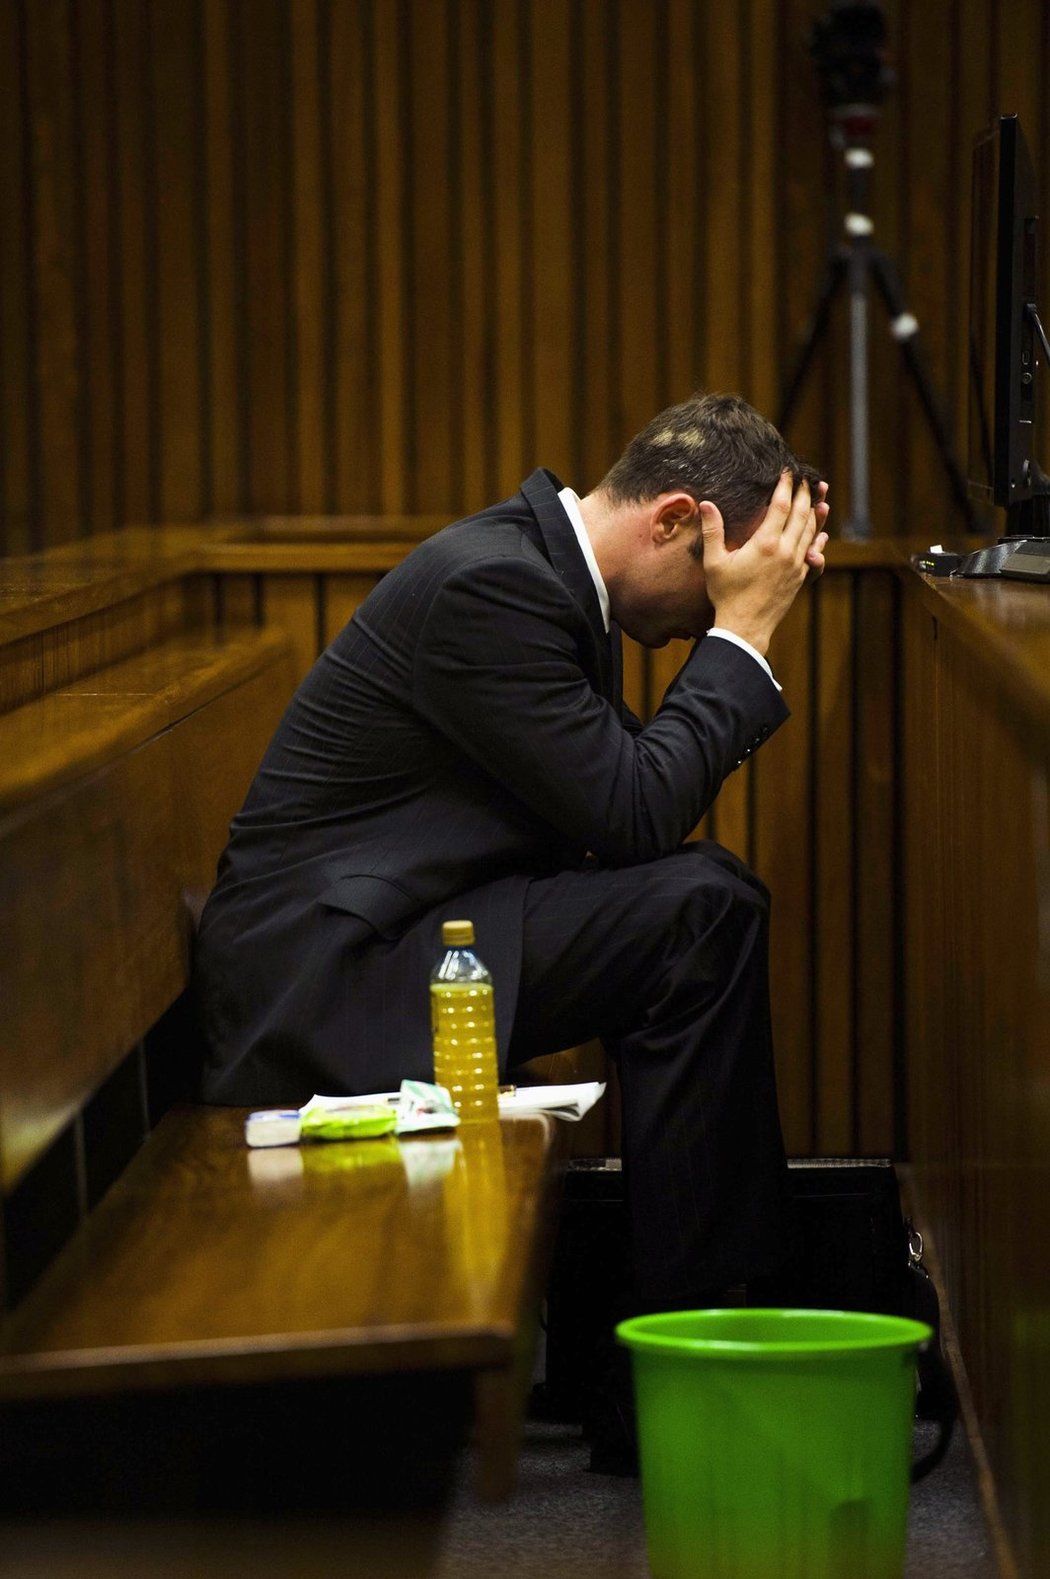 Pistorius už u soudu zvracel do zeleného kyblíku.